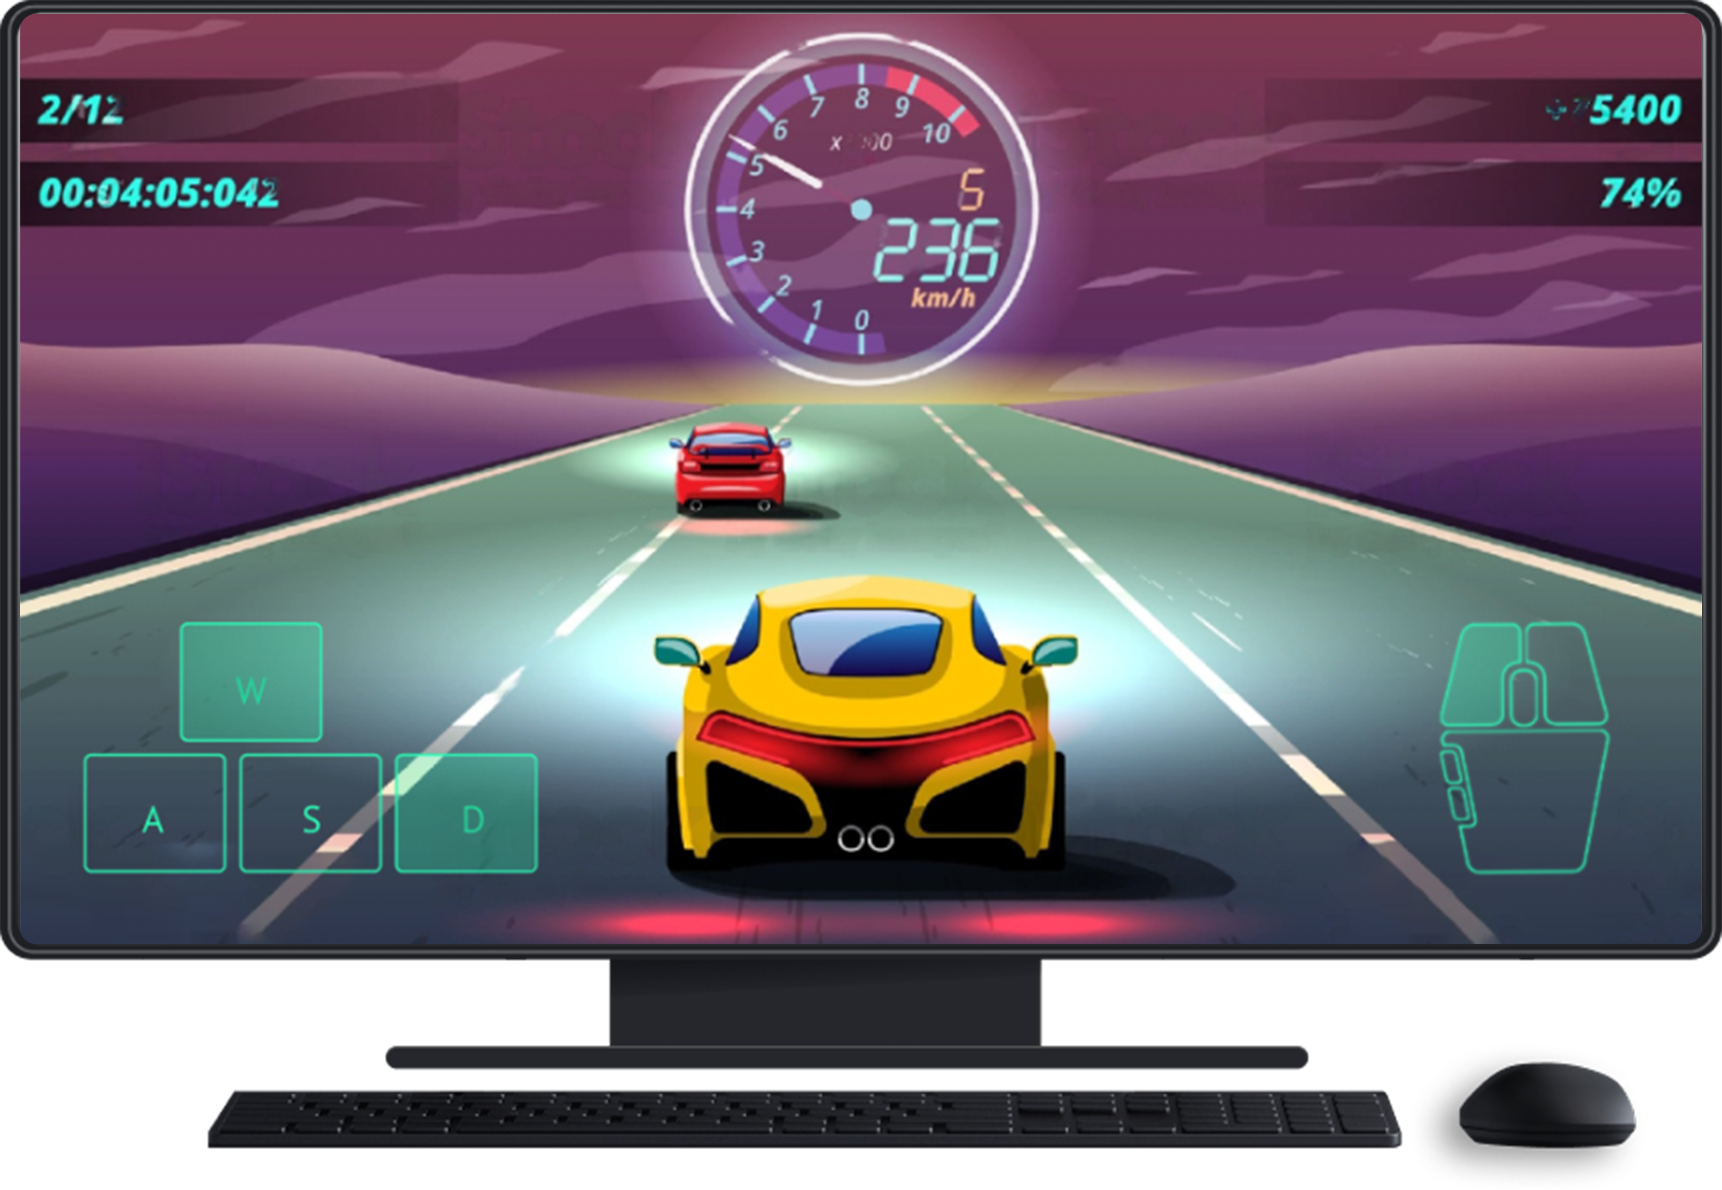 Computer mit Tastatur und Maus Ein Spiel ist auf dem Bildschirm zu sehen und zeigt Touchscreen-Eingaben für Richtungssteuerung und Maus.